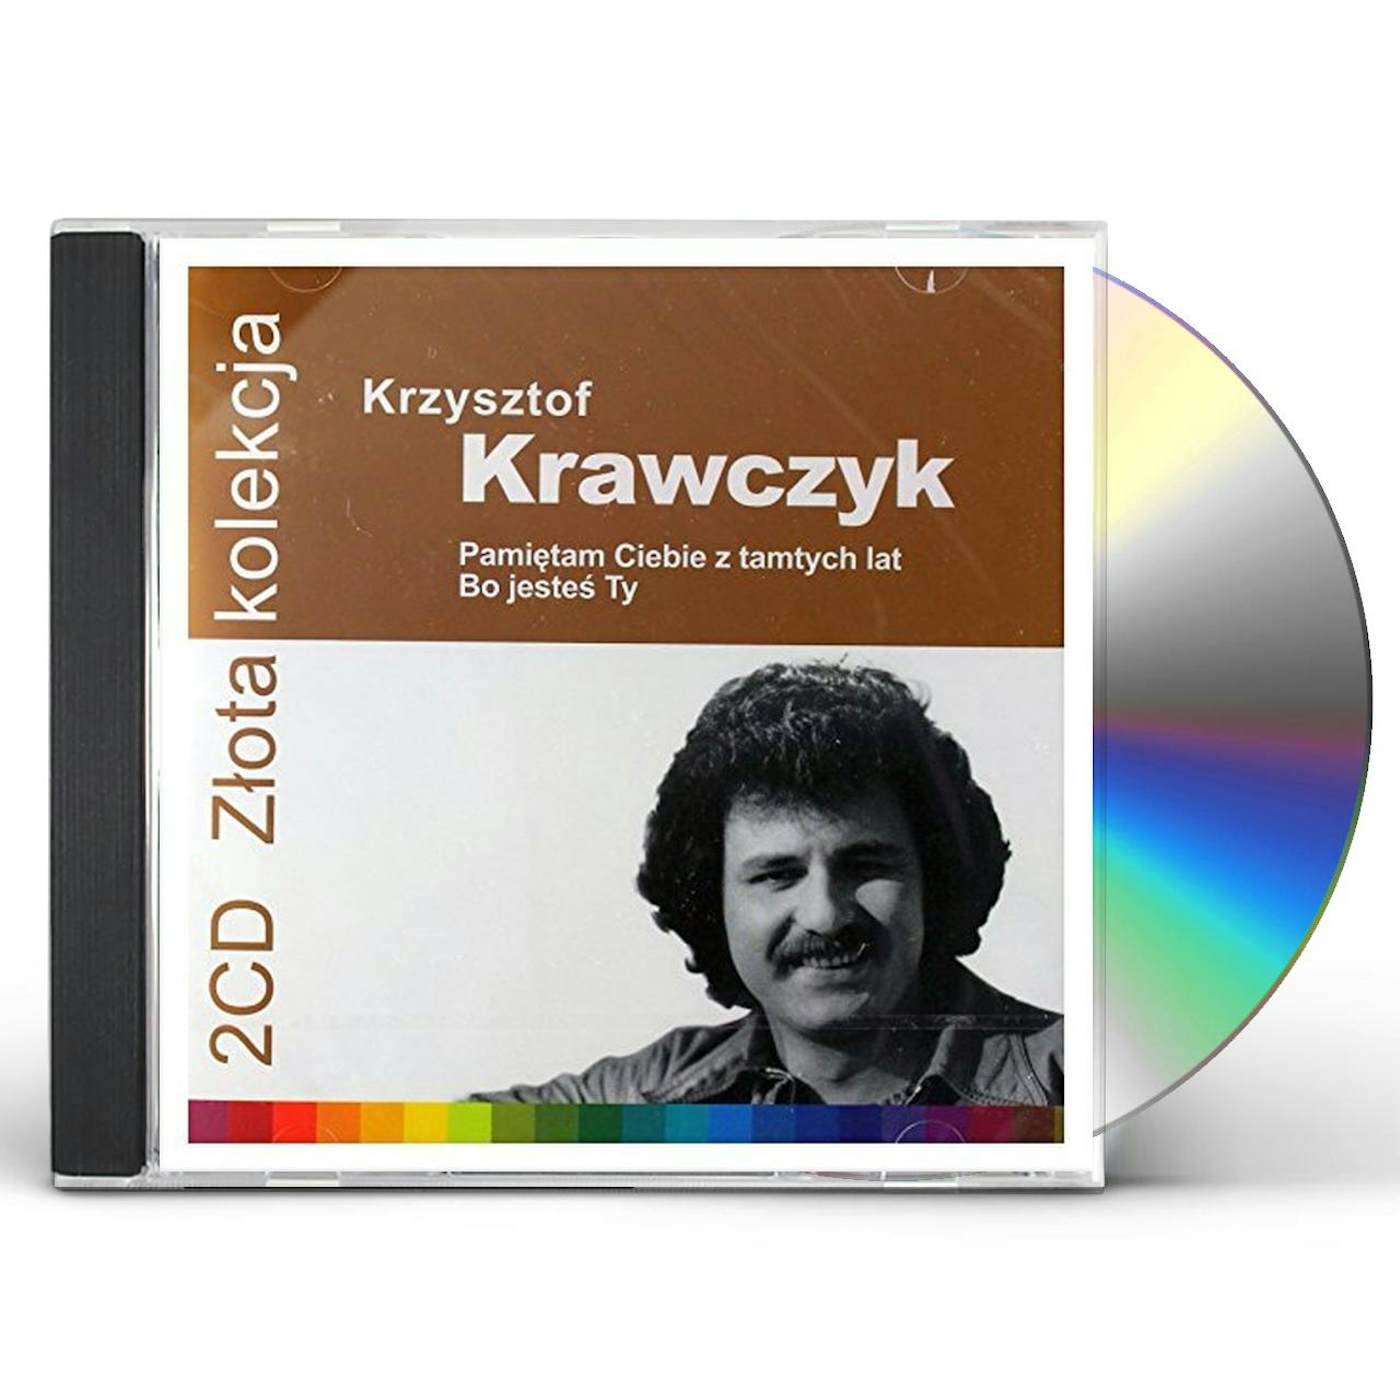 Krzysztof Krawczyk ZLOTA KOLEKCJA 1 & 2 CD